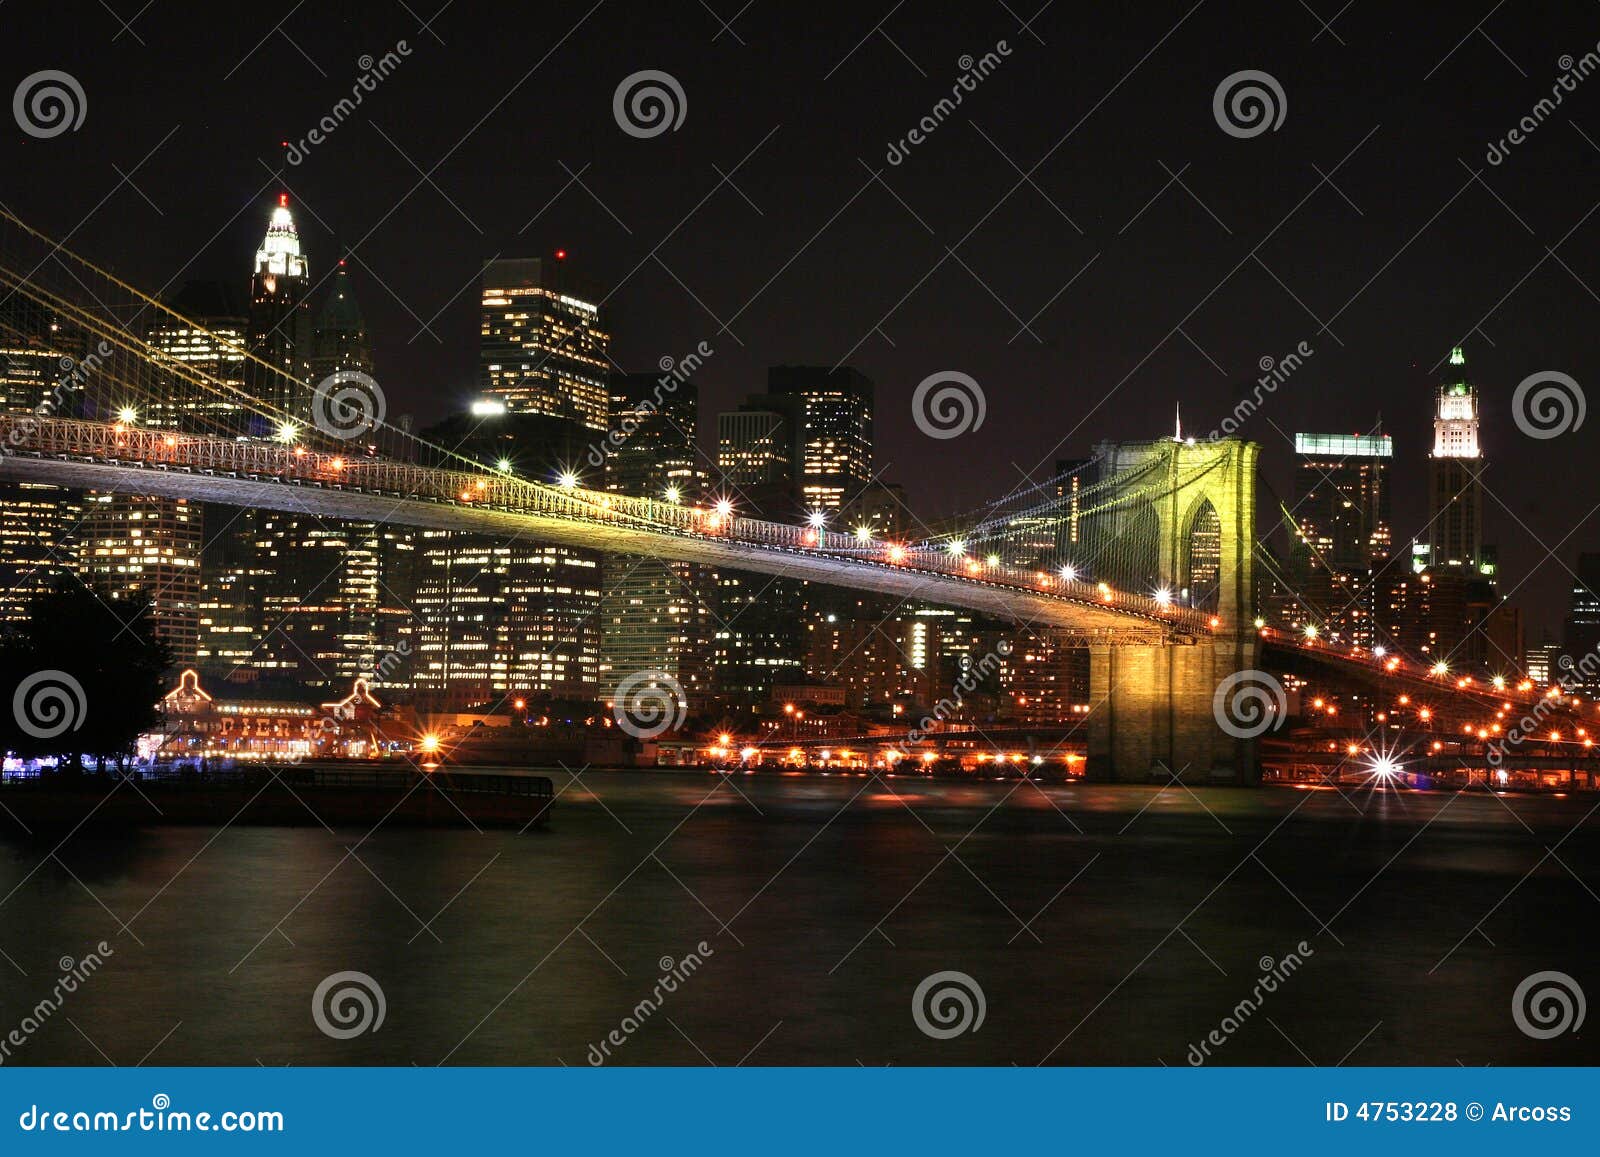 Brookly Bridge stock photo. Image of background, landmarks - 4753228